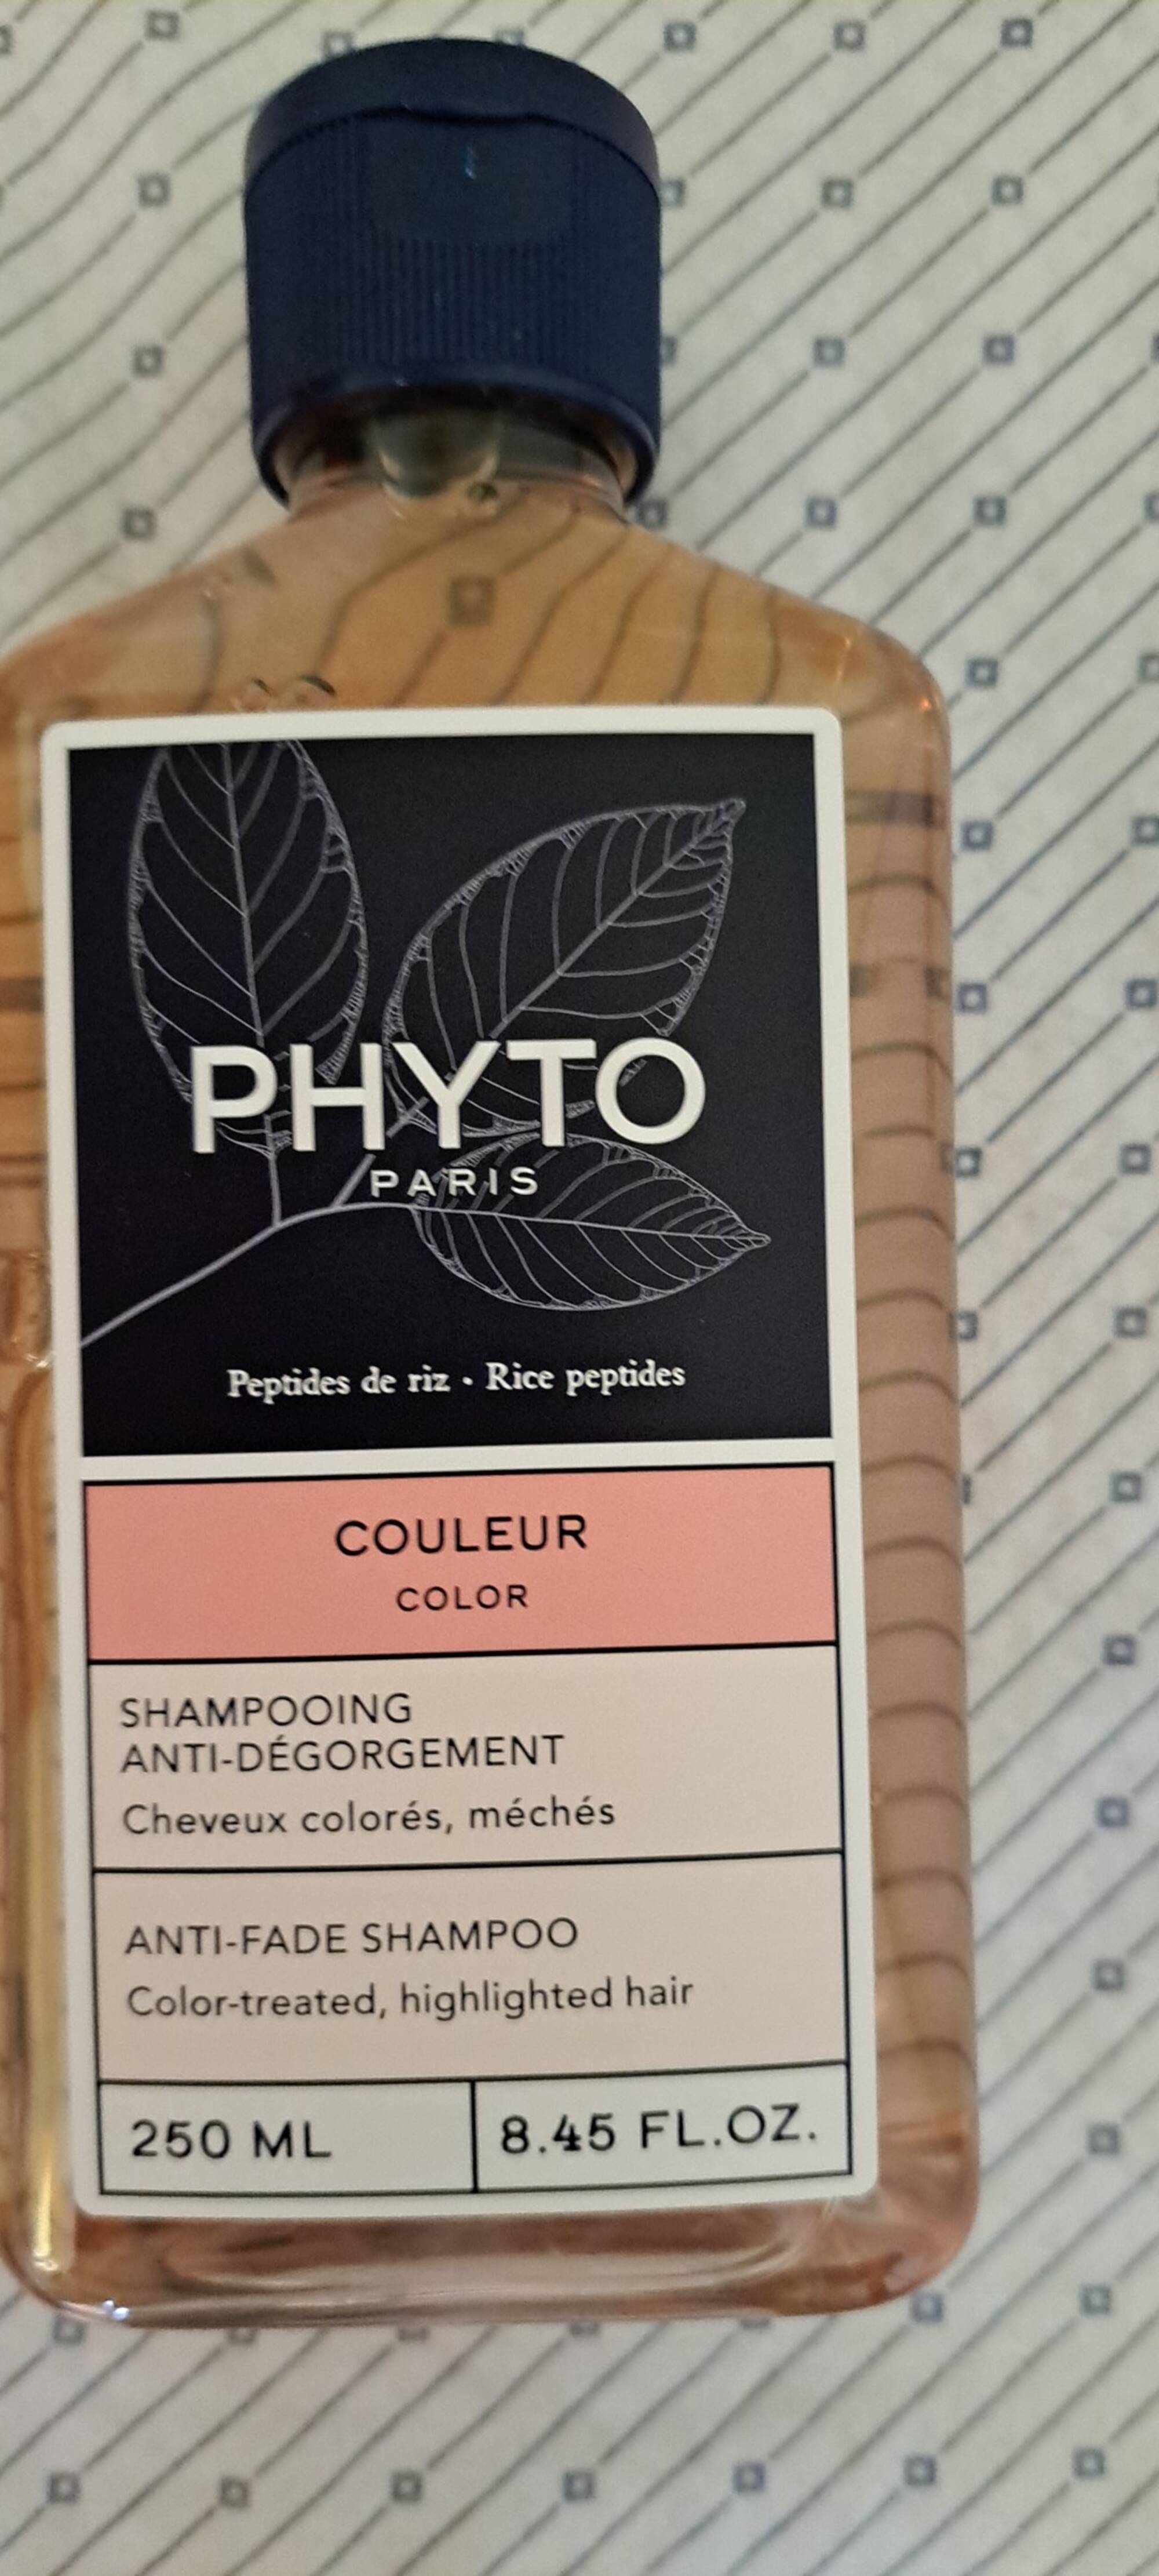 PHYTO PARIS - Shampooing couleur anti-dégorgement 